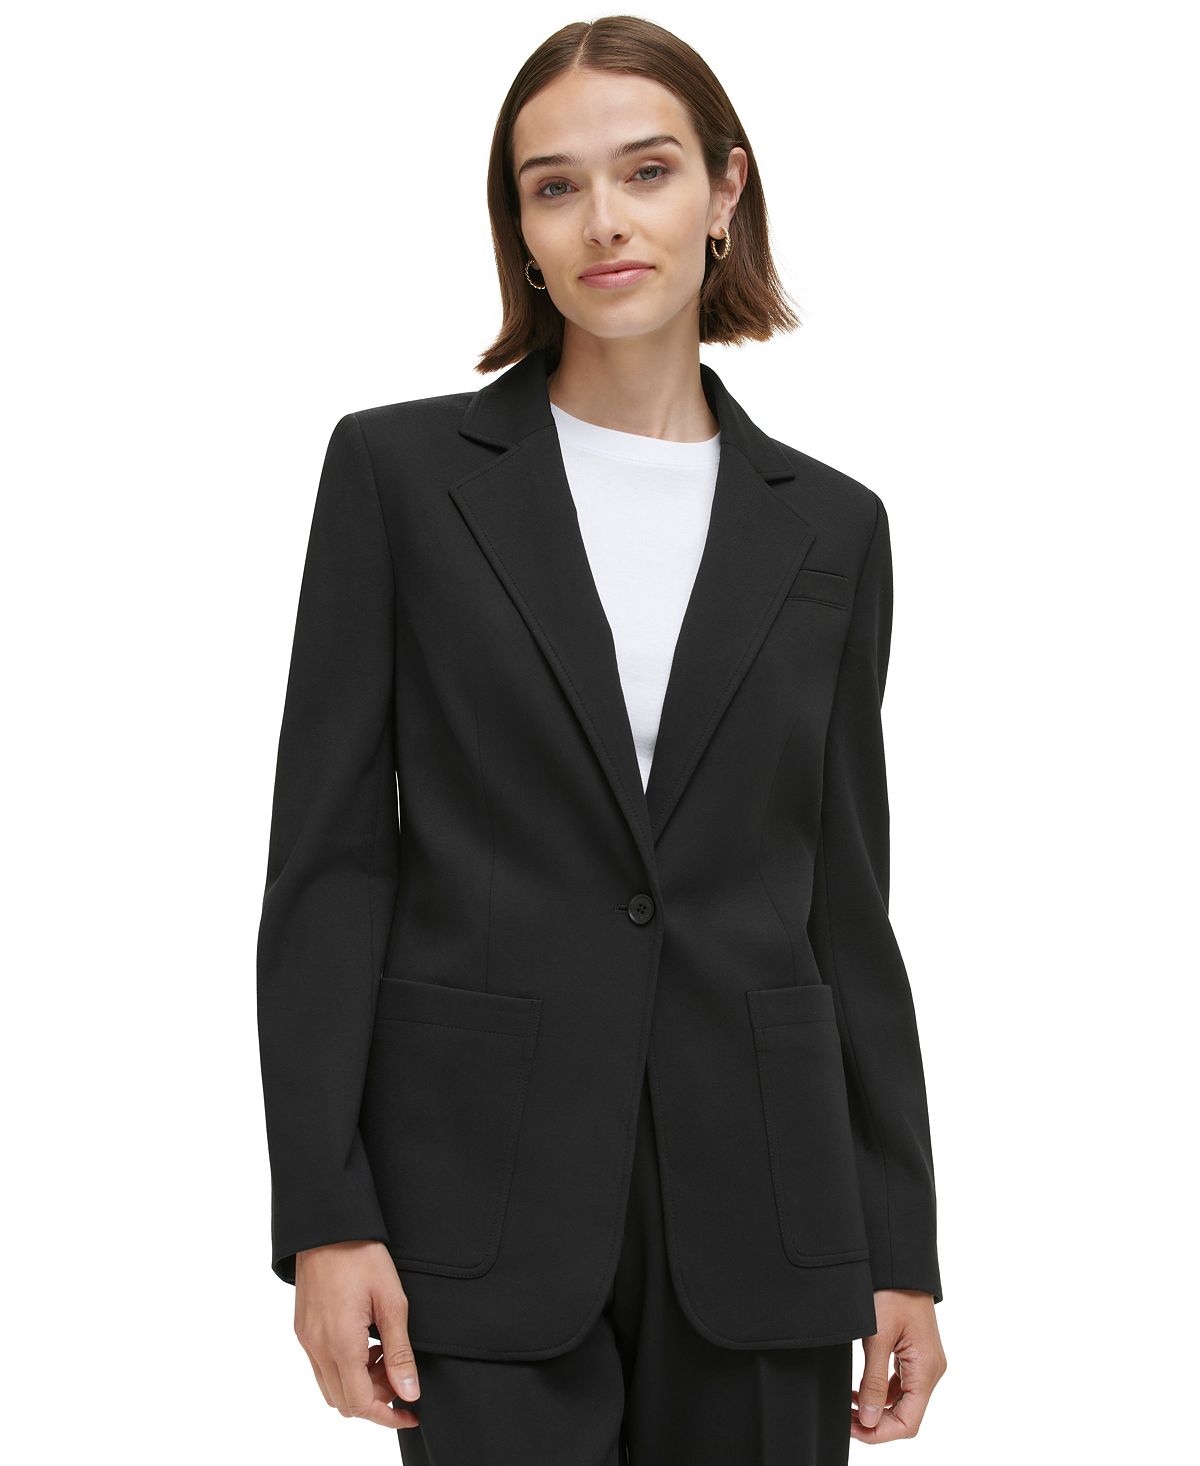 Женский классический пиджак на одной пуговице Calvin Klein, черный женский пиджак lux на одной пуговице calvin klein цвет charcoal